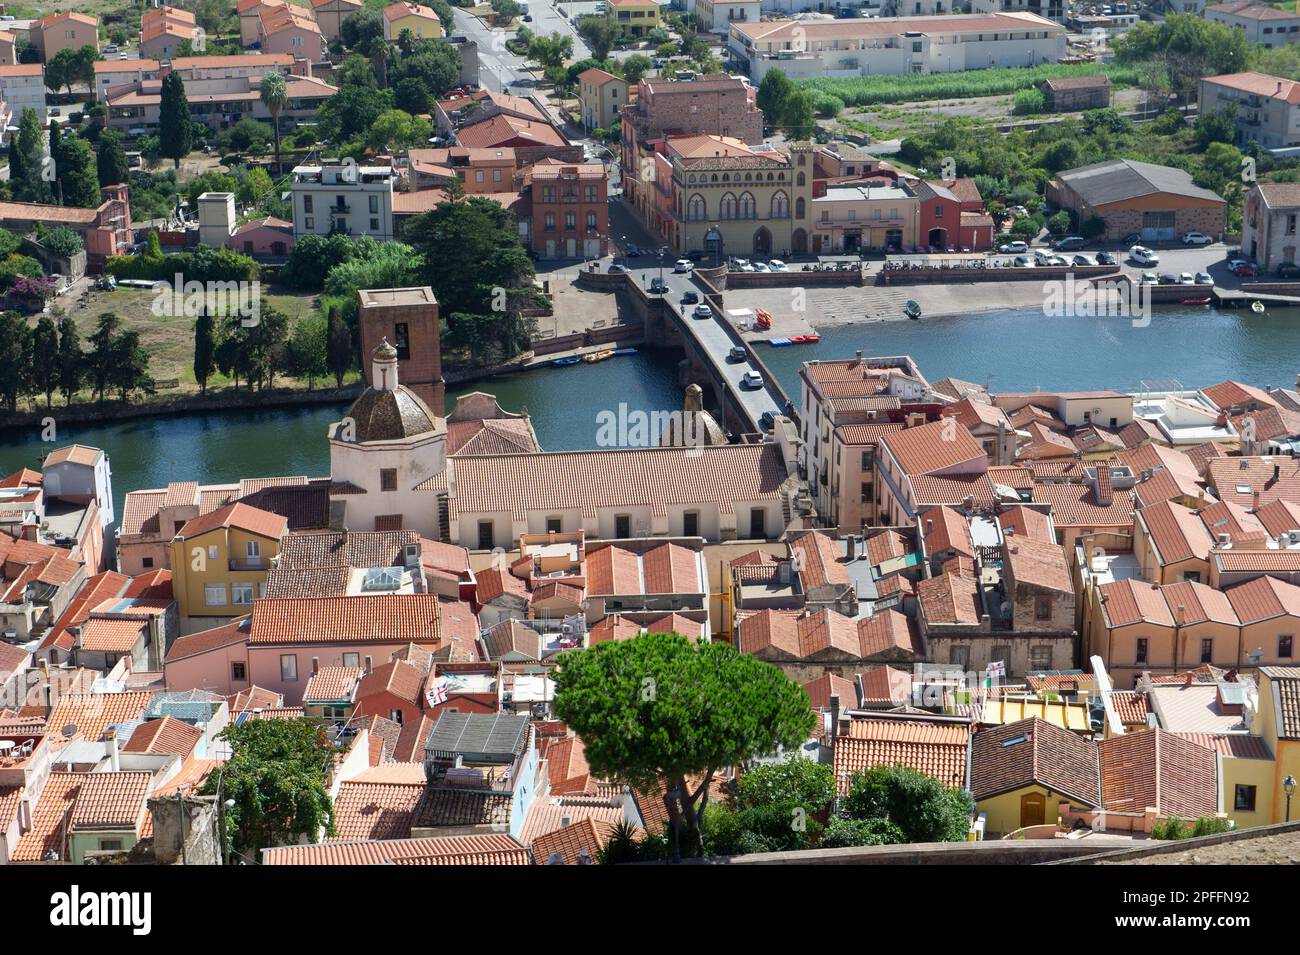 September 03, 2022 – Europa, Italien, Sardinien, Oristano, Blick auf Bosa, das wunderschöne Dorf mit bunten Häusern und das mittelalterliche Schloss Malaspina. Anzeigen Stockfoto